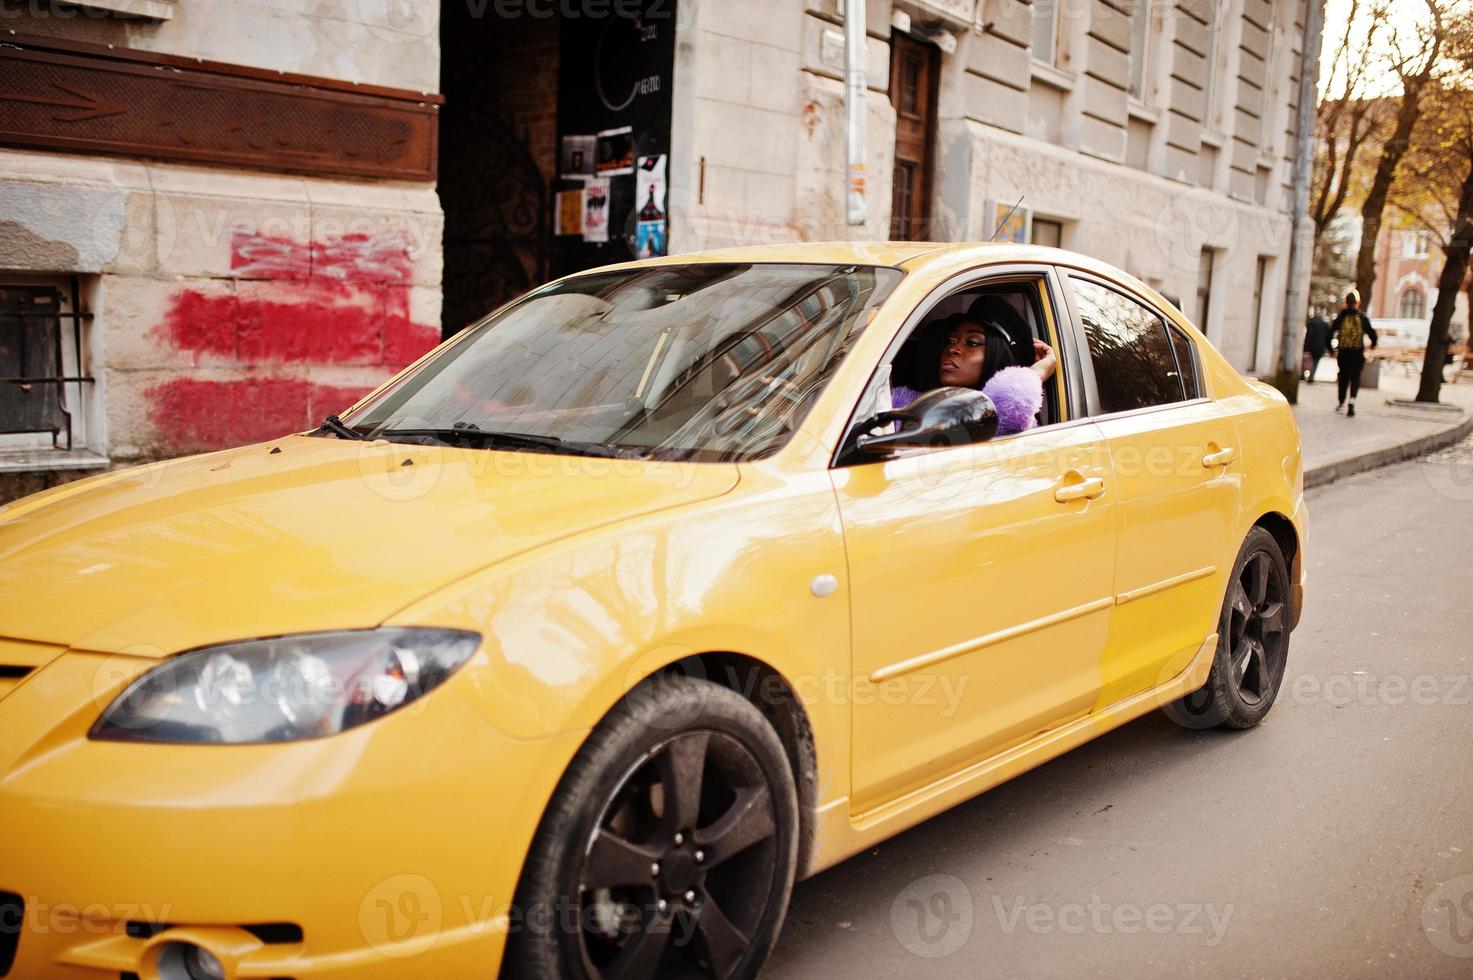 afroamerikanerin im violetten kleid und in der kappe posierte im gelben auto. foto